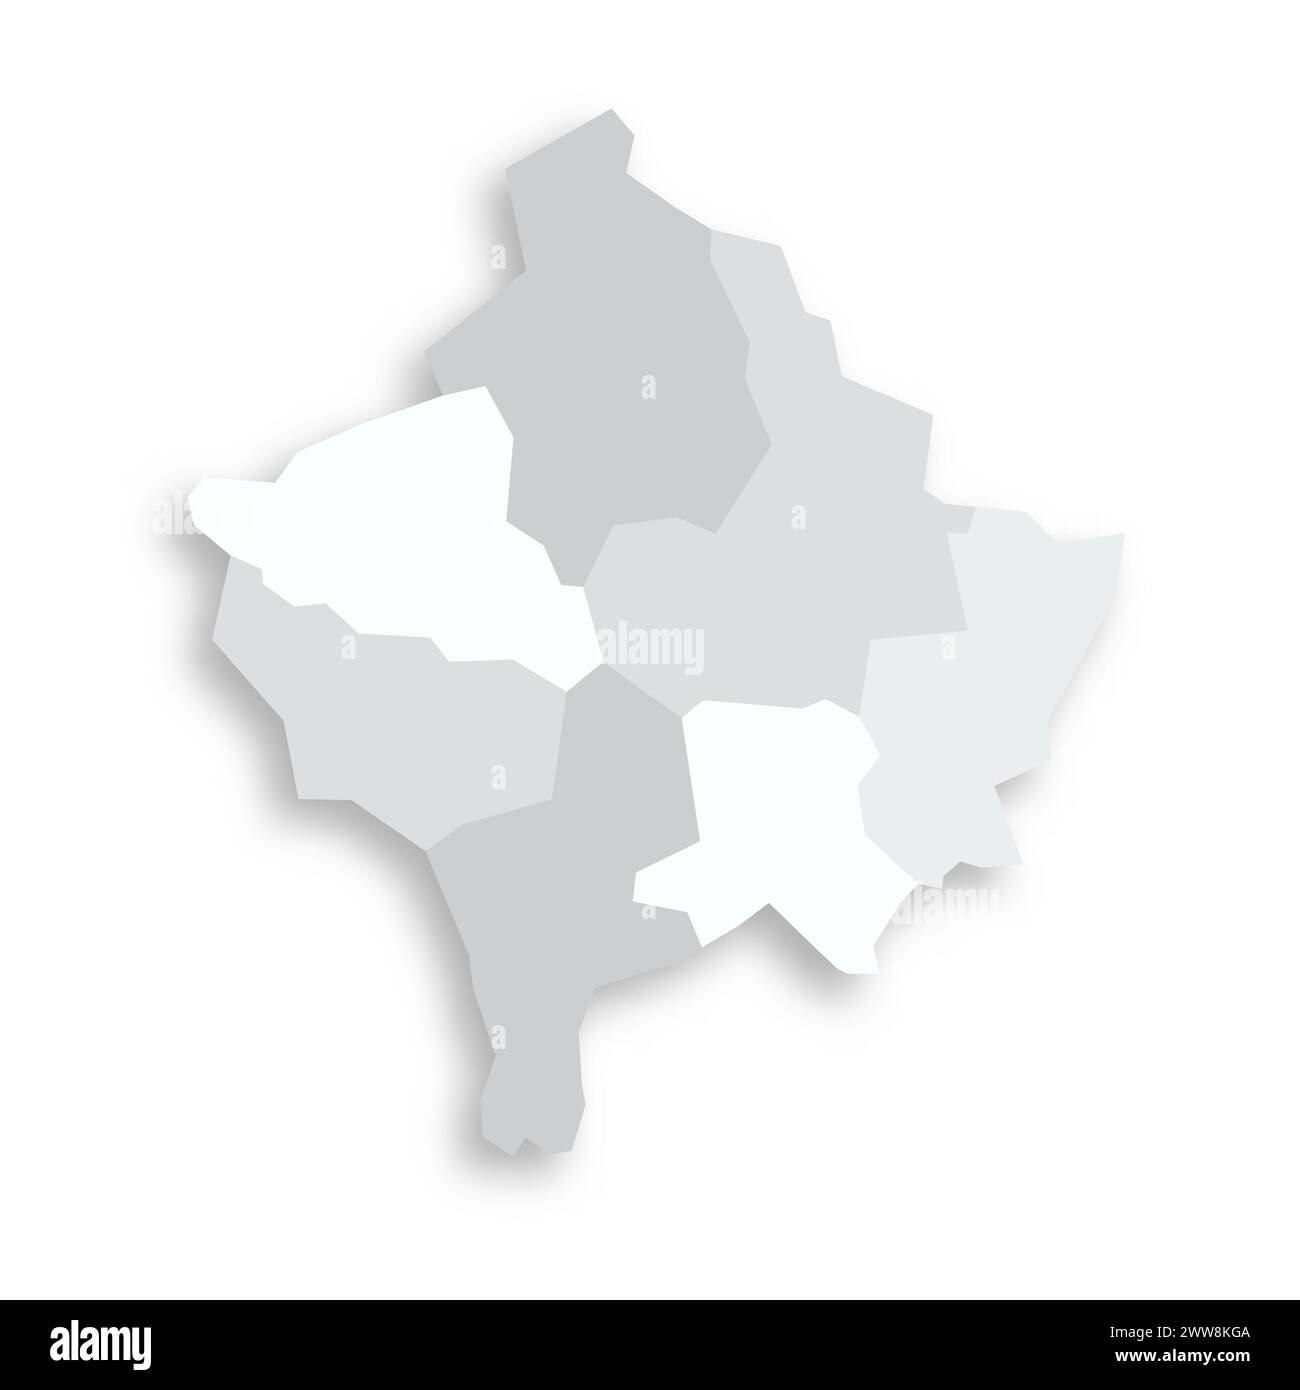 Mappa politica del Kosovo delle divisioni amministrative - distretti. Mappa vettoriale piatta vuota grigia con ombra esterna. Illustrazione Vettoriale